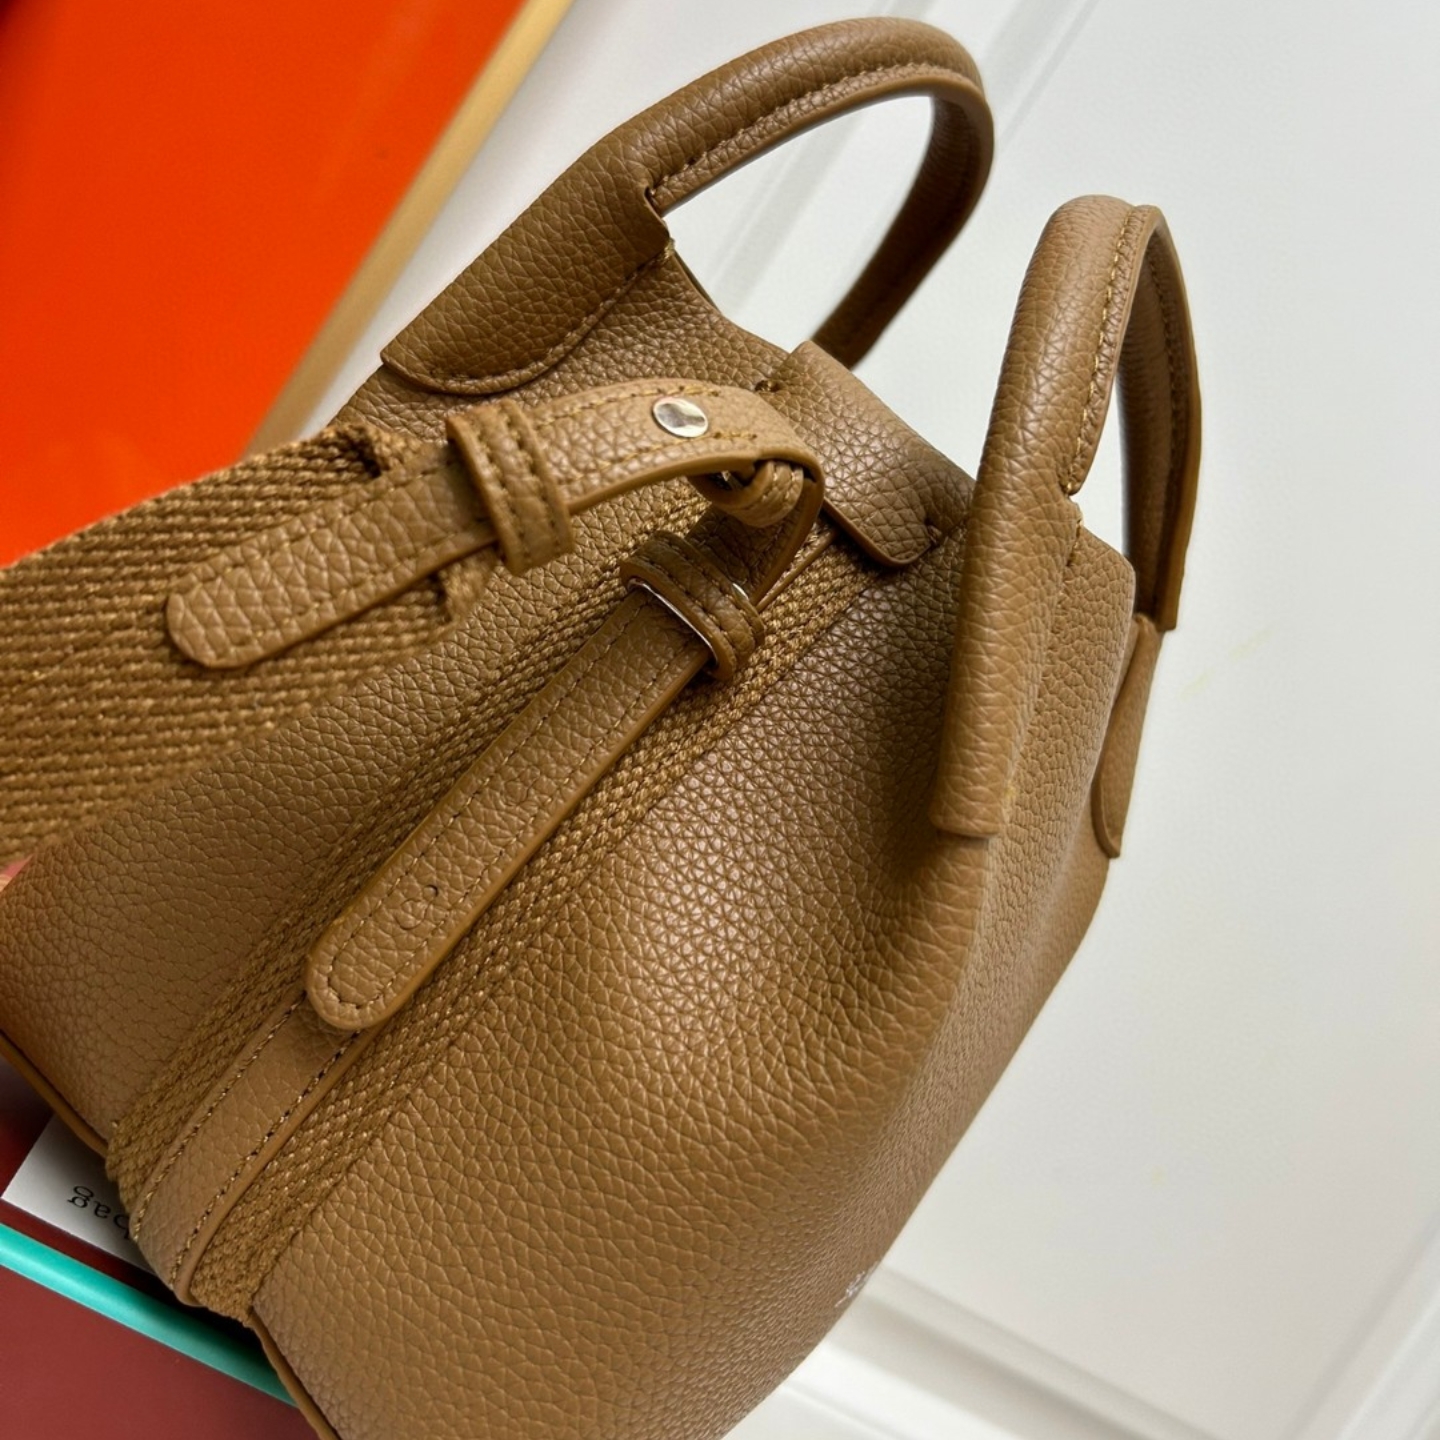 P170-2 Высококачественный рюкзак с новой сумкой для ведра может быть с плечами до спины, портативной, модной, ежедневной одежды необходимого размера 16x14x14 см.